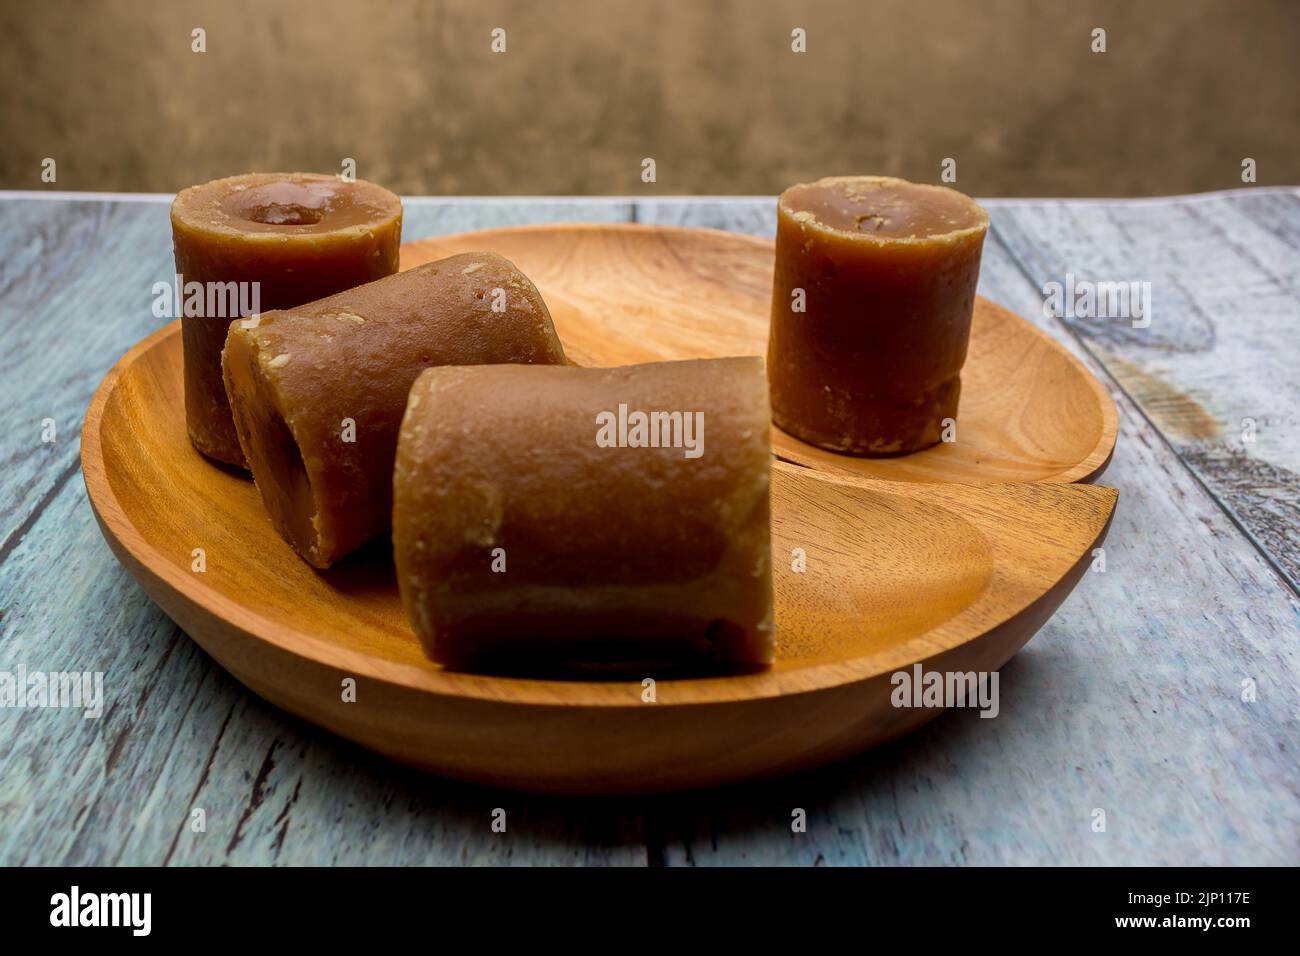 Zucchero di canna indonesiano, zucchero di palma o merah di gula in cubetti con vassoio di legno Foto Stock